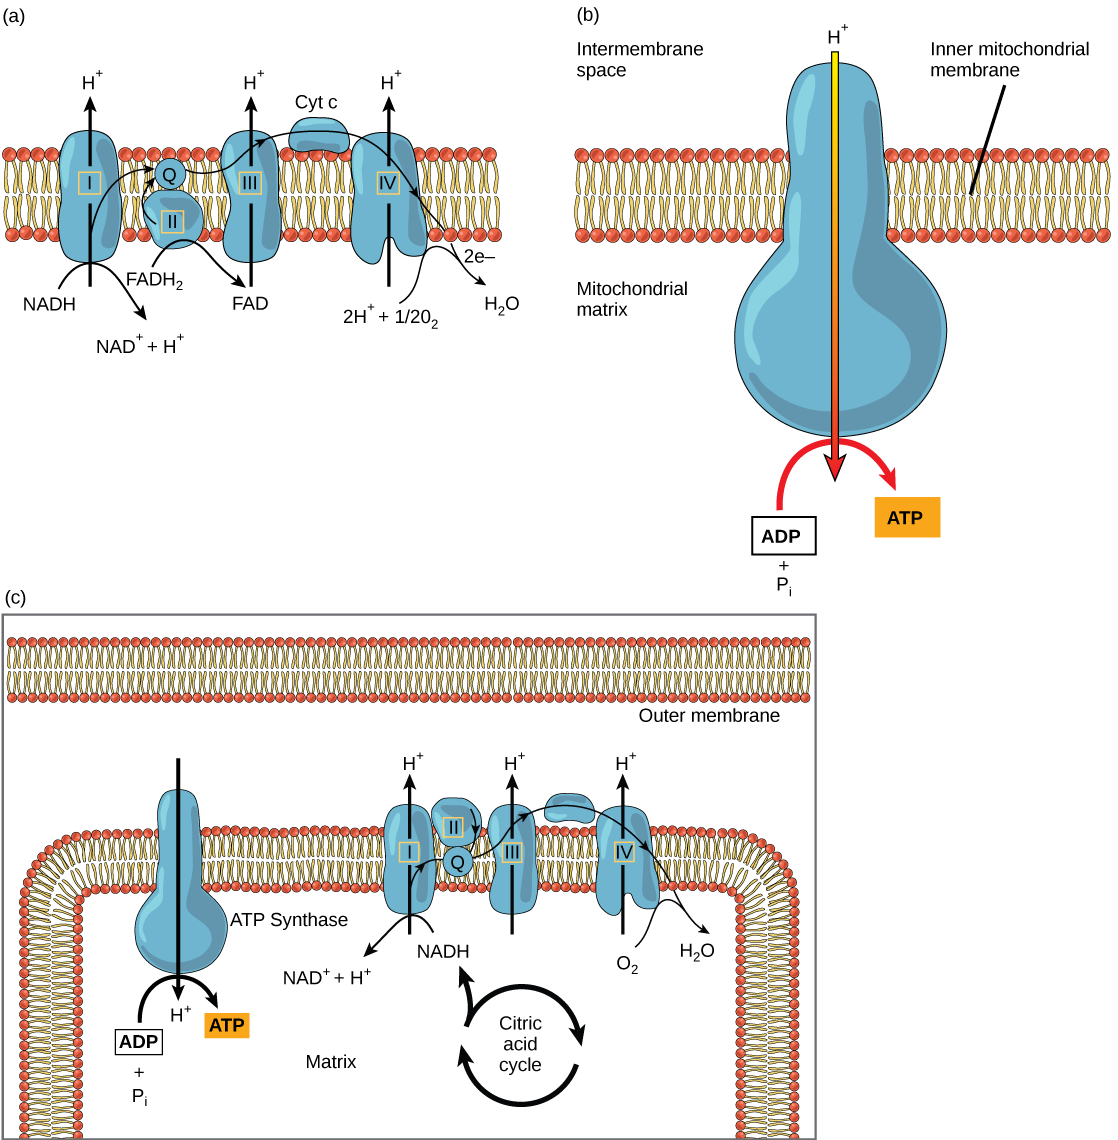 Частина а: Ця ілюстрація показує ланцюг транспортування електронів, вбудований у внутрішню мембрану мітохондрій. Ланцюг транспортування електронів складається з чотирьох електронних комплексів. Комплекс I окисляє NADH до NAD+ і одночасно перекачує протон через мембрану в міжмембранний простір. Два електрони, що виділяються з NADH, затвоюються до коензиму Q, потім до комплексу III, до цитохрому c, до комплексу IV, потім до молекулярного кисню. В процесі ще два протони перекачуються через мембрану в міжмембранний простір, а молекулярний кисень скорочується з утворенням води. Комплекс II видаляє два електрони з FADH2, тим самим утворюючи FAD. Електрони відключаються до коензиму Q, потім до комплексу III, цитохрому c, комплексу I та молекулярного кисню, як у випадку окислення NADH. Частина b: Ця ілюстрація показує фермент АТФ-синтази, вбудований у внутрішню мембрану мітохондрій. АТФ-синтаза дозволяє протонам переміщатися з області високої концентрації в міжмембранному просторі в область низької концентрації в мітохондріальному матриксі. Енергія, отримана в результаті цього ексергонічного процесу, використовується для синтезу АТФ з АДФ та неорганічного фосфату. Частина c: Ця ілюстрація показує ланцюг транспортування електронів та фермент АТФ-синтази, вбудований у внутрішню мембрану мітохондрій, та цикл лимонної кислоти в матриці мітохондрій. Цикл лимонної кислоти подає NADH і FADH2 в ланцюг транспортування електронів. Електронний транспортний ланцюг окисляє ці субстрати і в процесі перекачує протони в міжмембранний простір. АТФ-синтаза дозволяє протонам просочуватися назад в матрикс і синтезує АТФ.